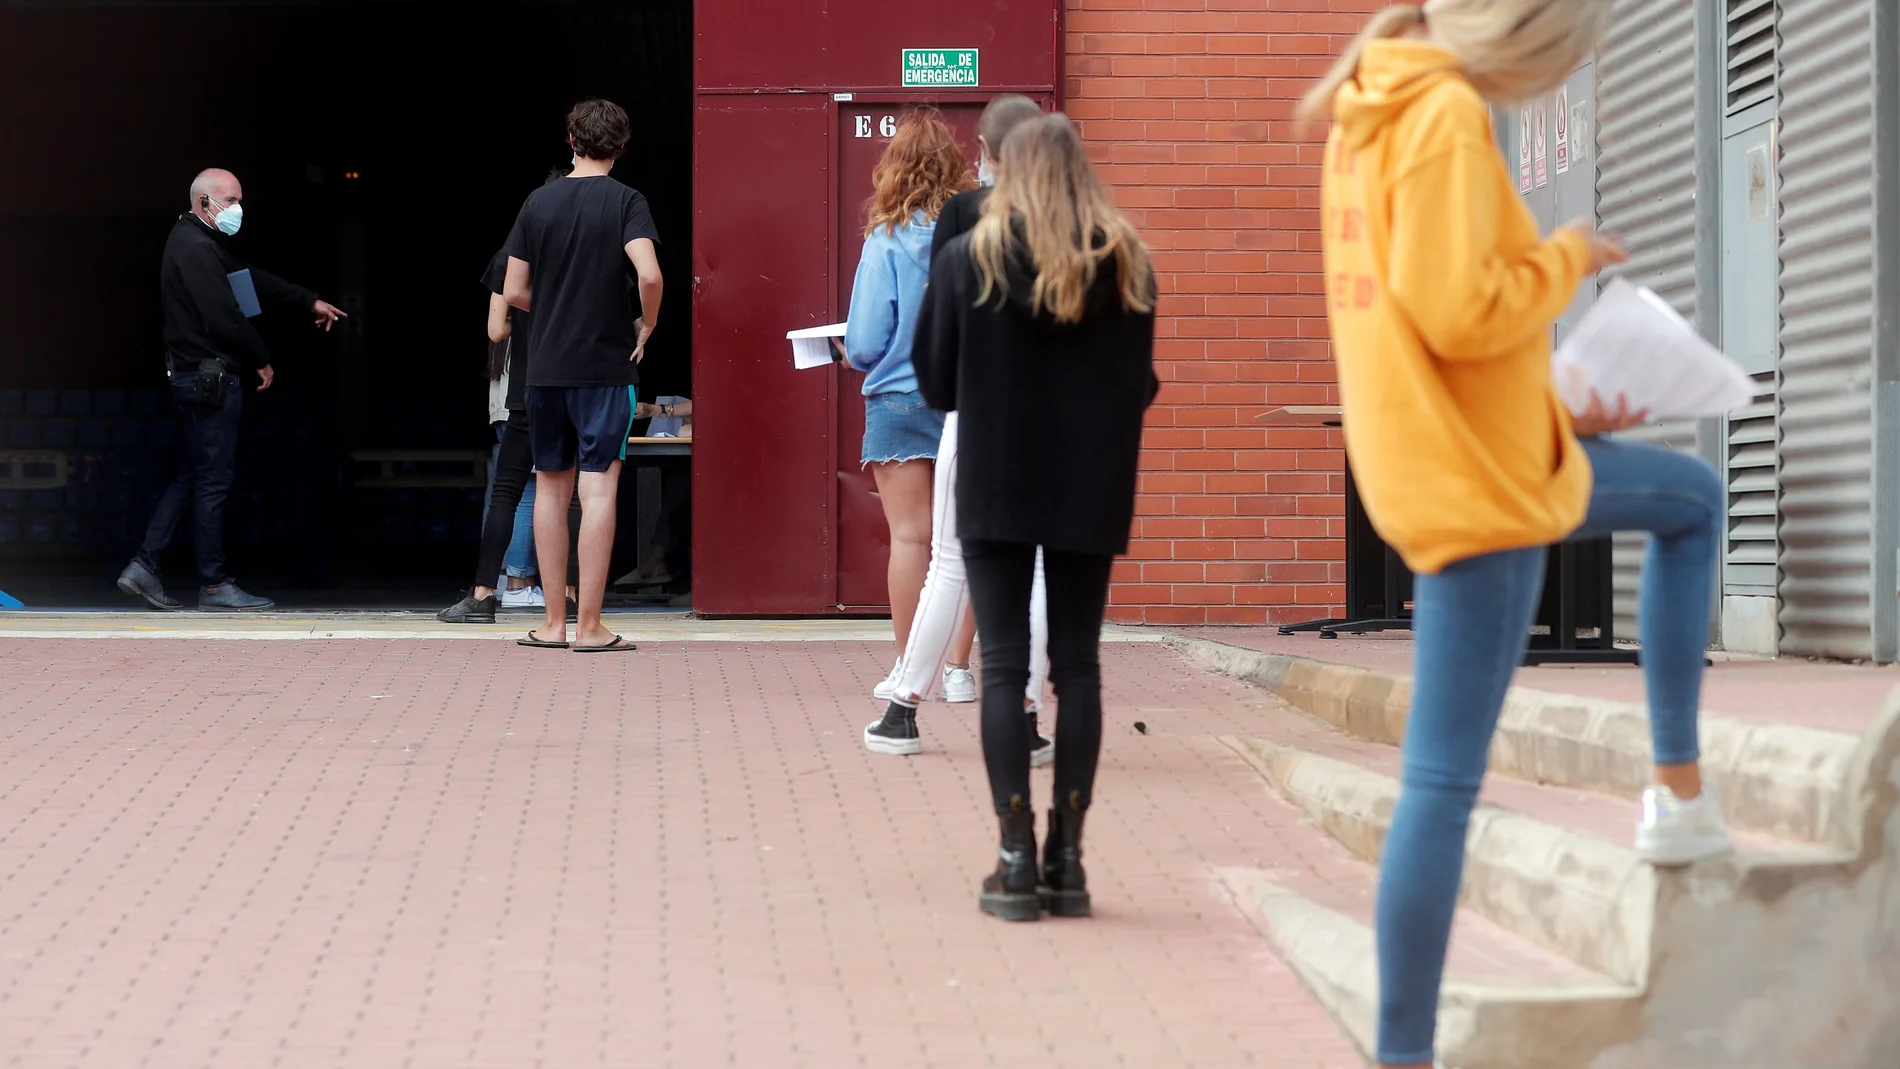 Alumnos de la Universidad Politécnica de Valencia (UPV) guardan cola en el exterior de las instalaciones del pabellón de baloncesto donde se realizan pruebas PCR a unos 700 estudiantes, tras confirmarse más de una veintena de casos positivos de covid-19 entre universitarios del campus de Vera. EFE/Kai Försterling